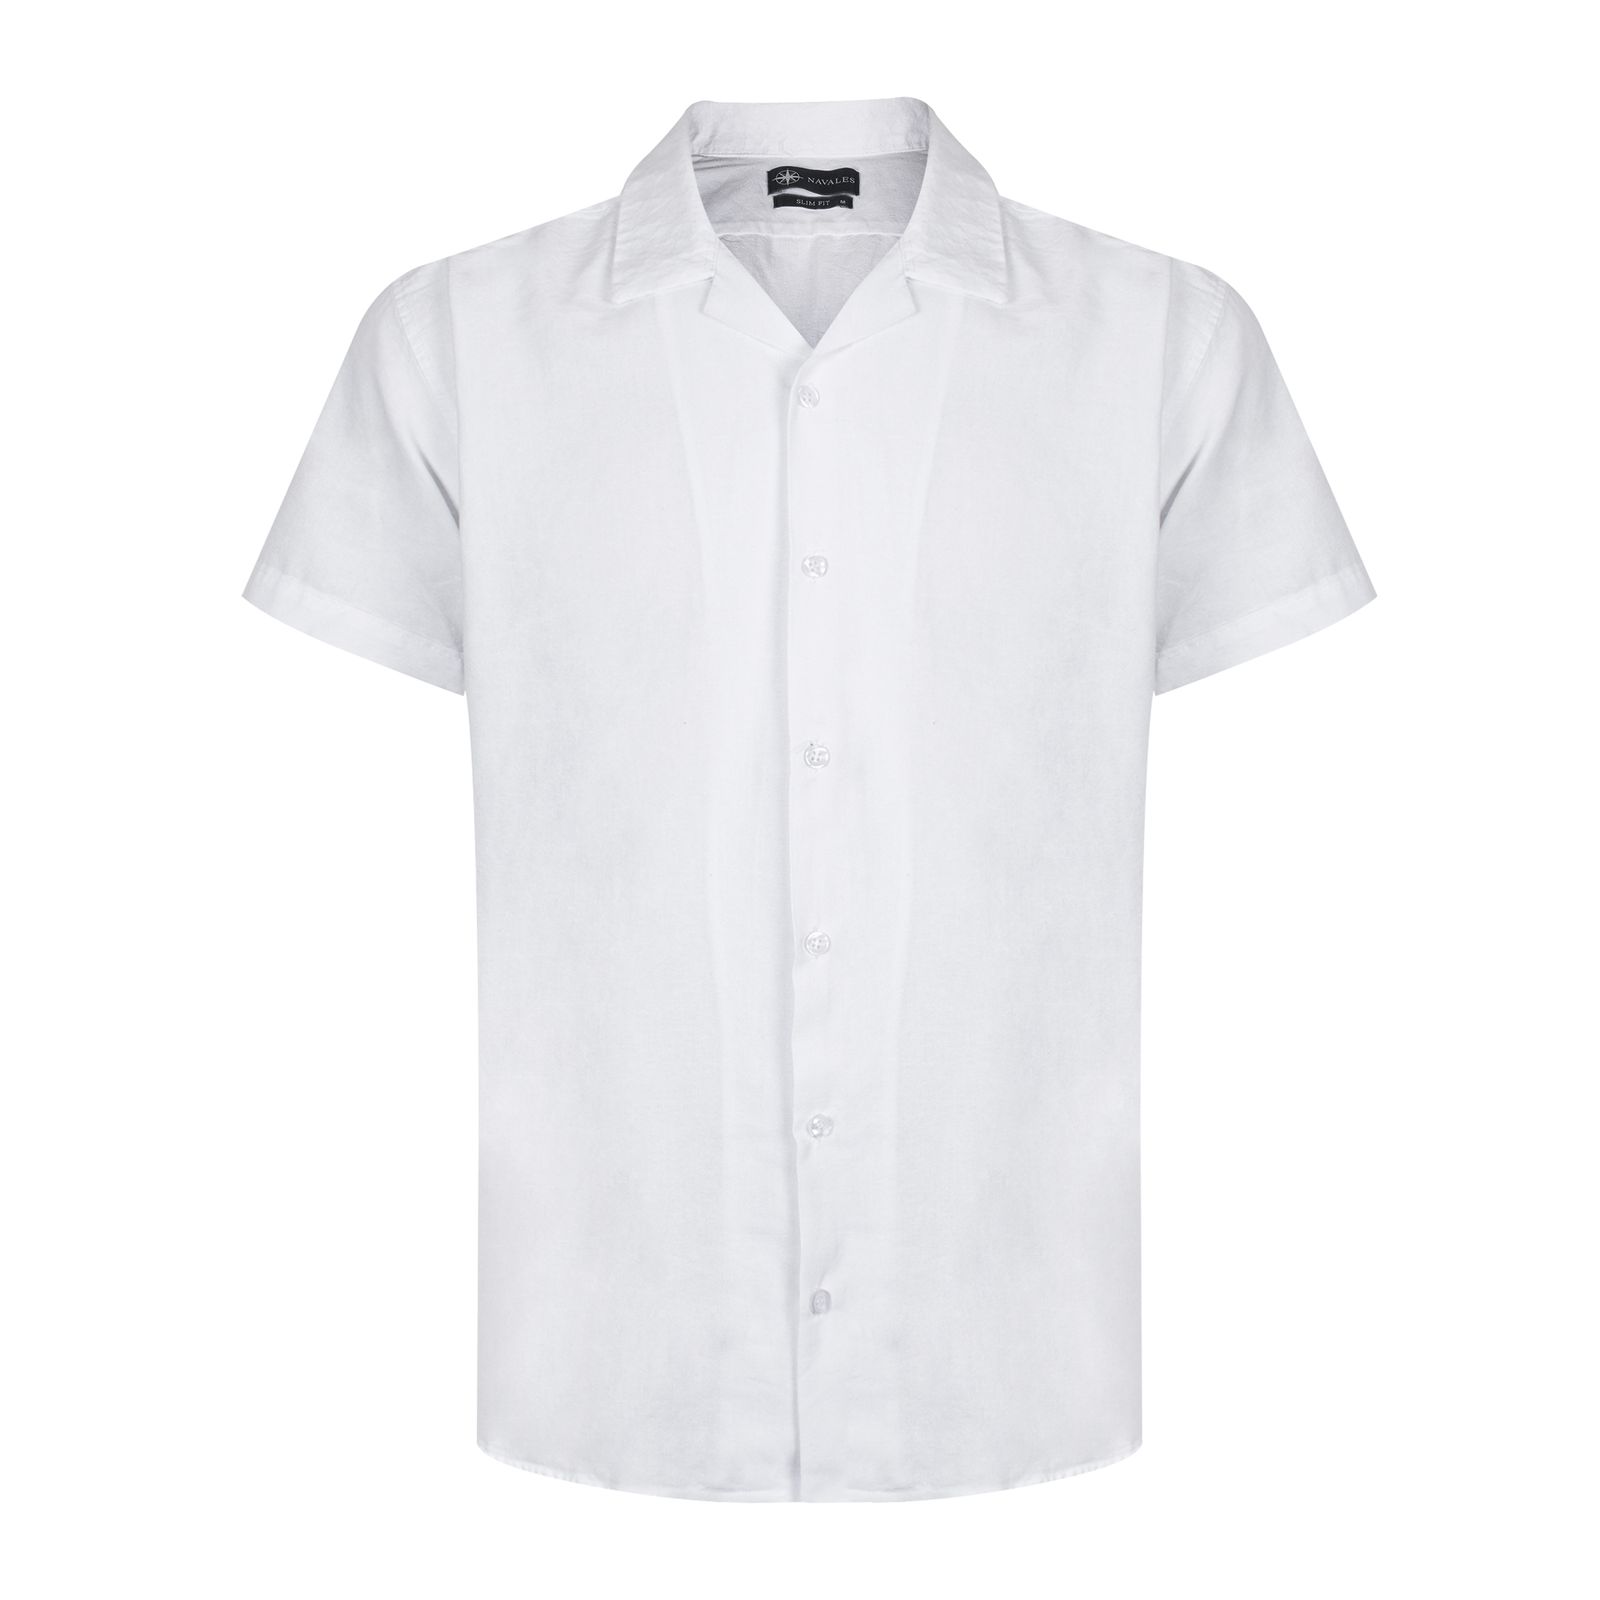 پیراهن آستین کوتاه مردانه ناوالس مدل BACONAO SHIRT رنگ سفید -  - 1